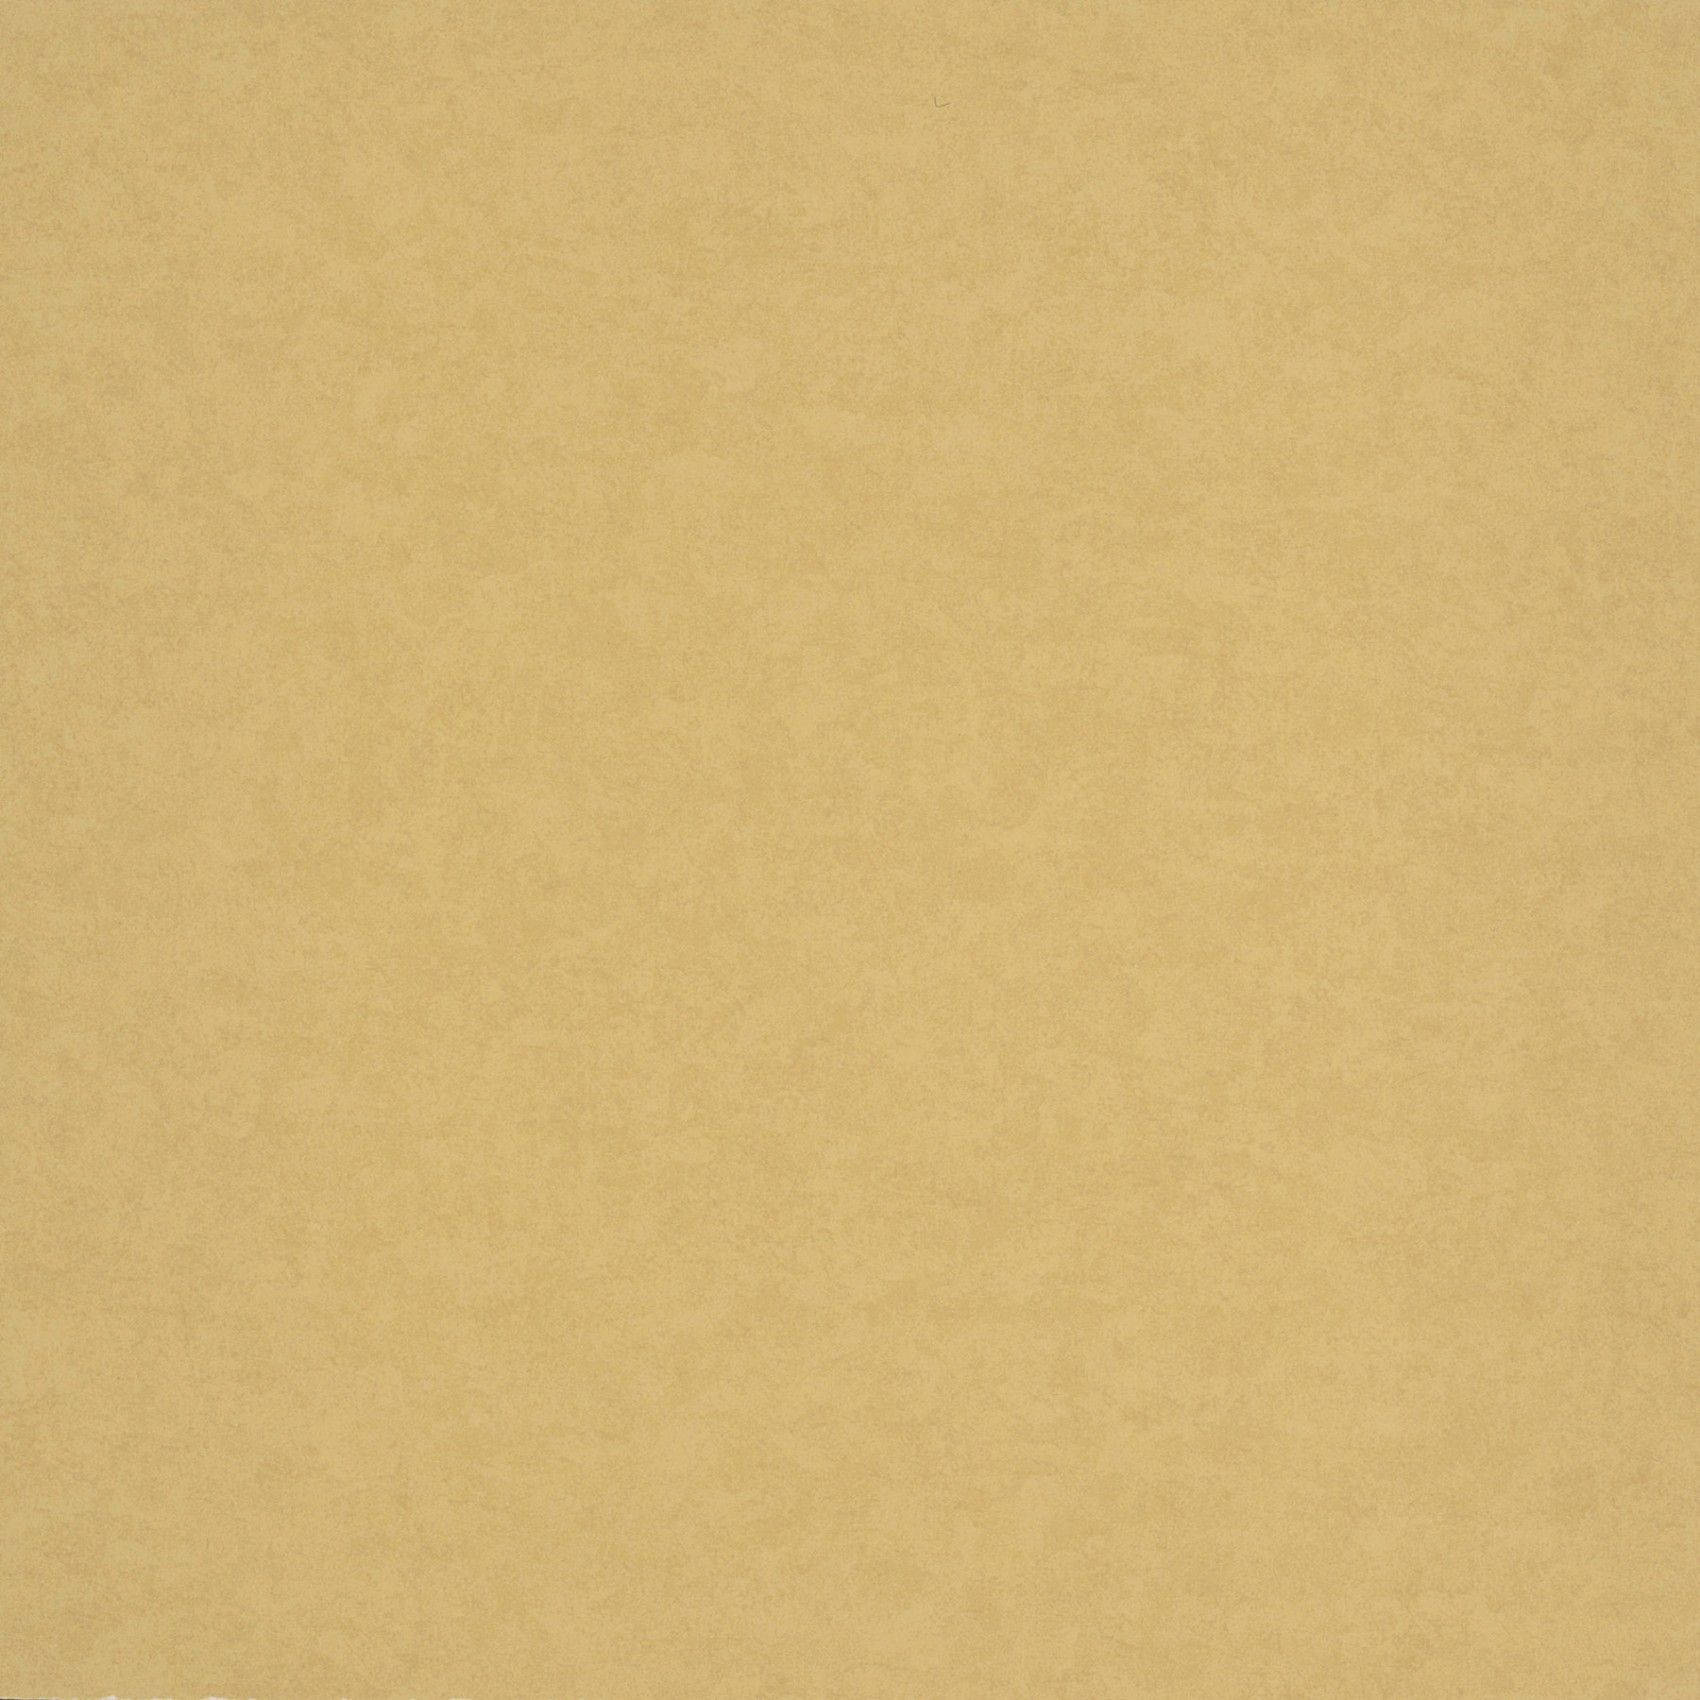 Plain Brown Kraft Paper Texture Wallpaper